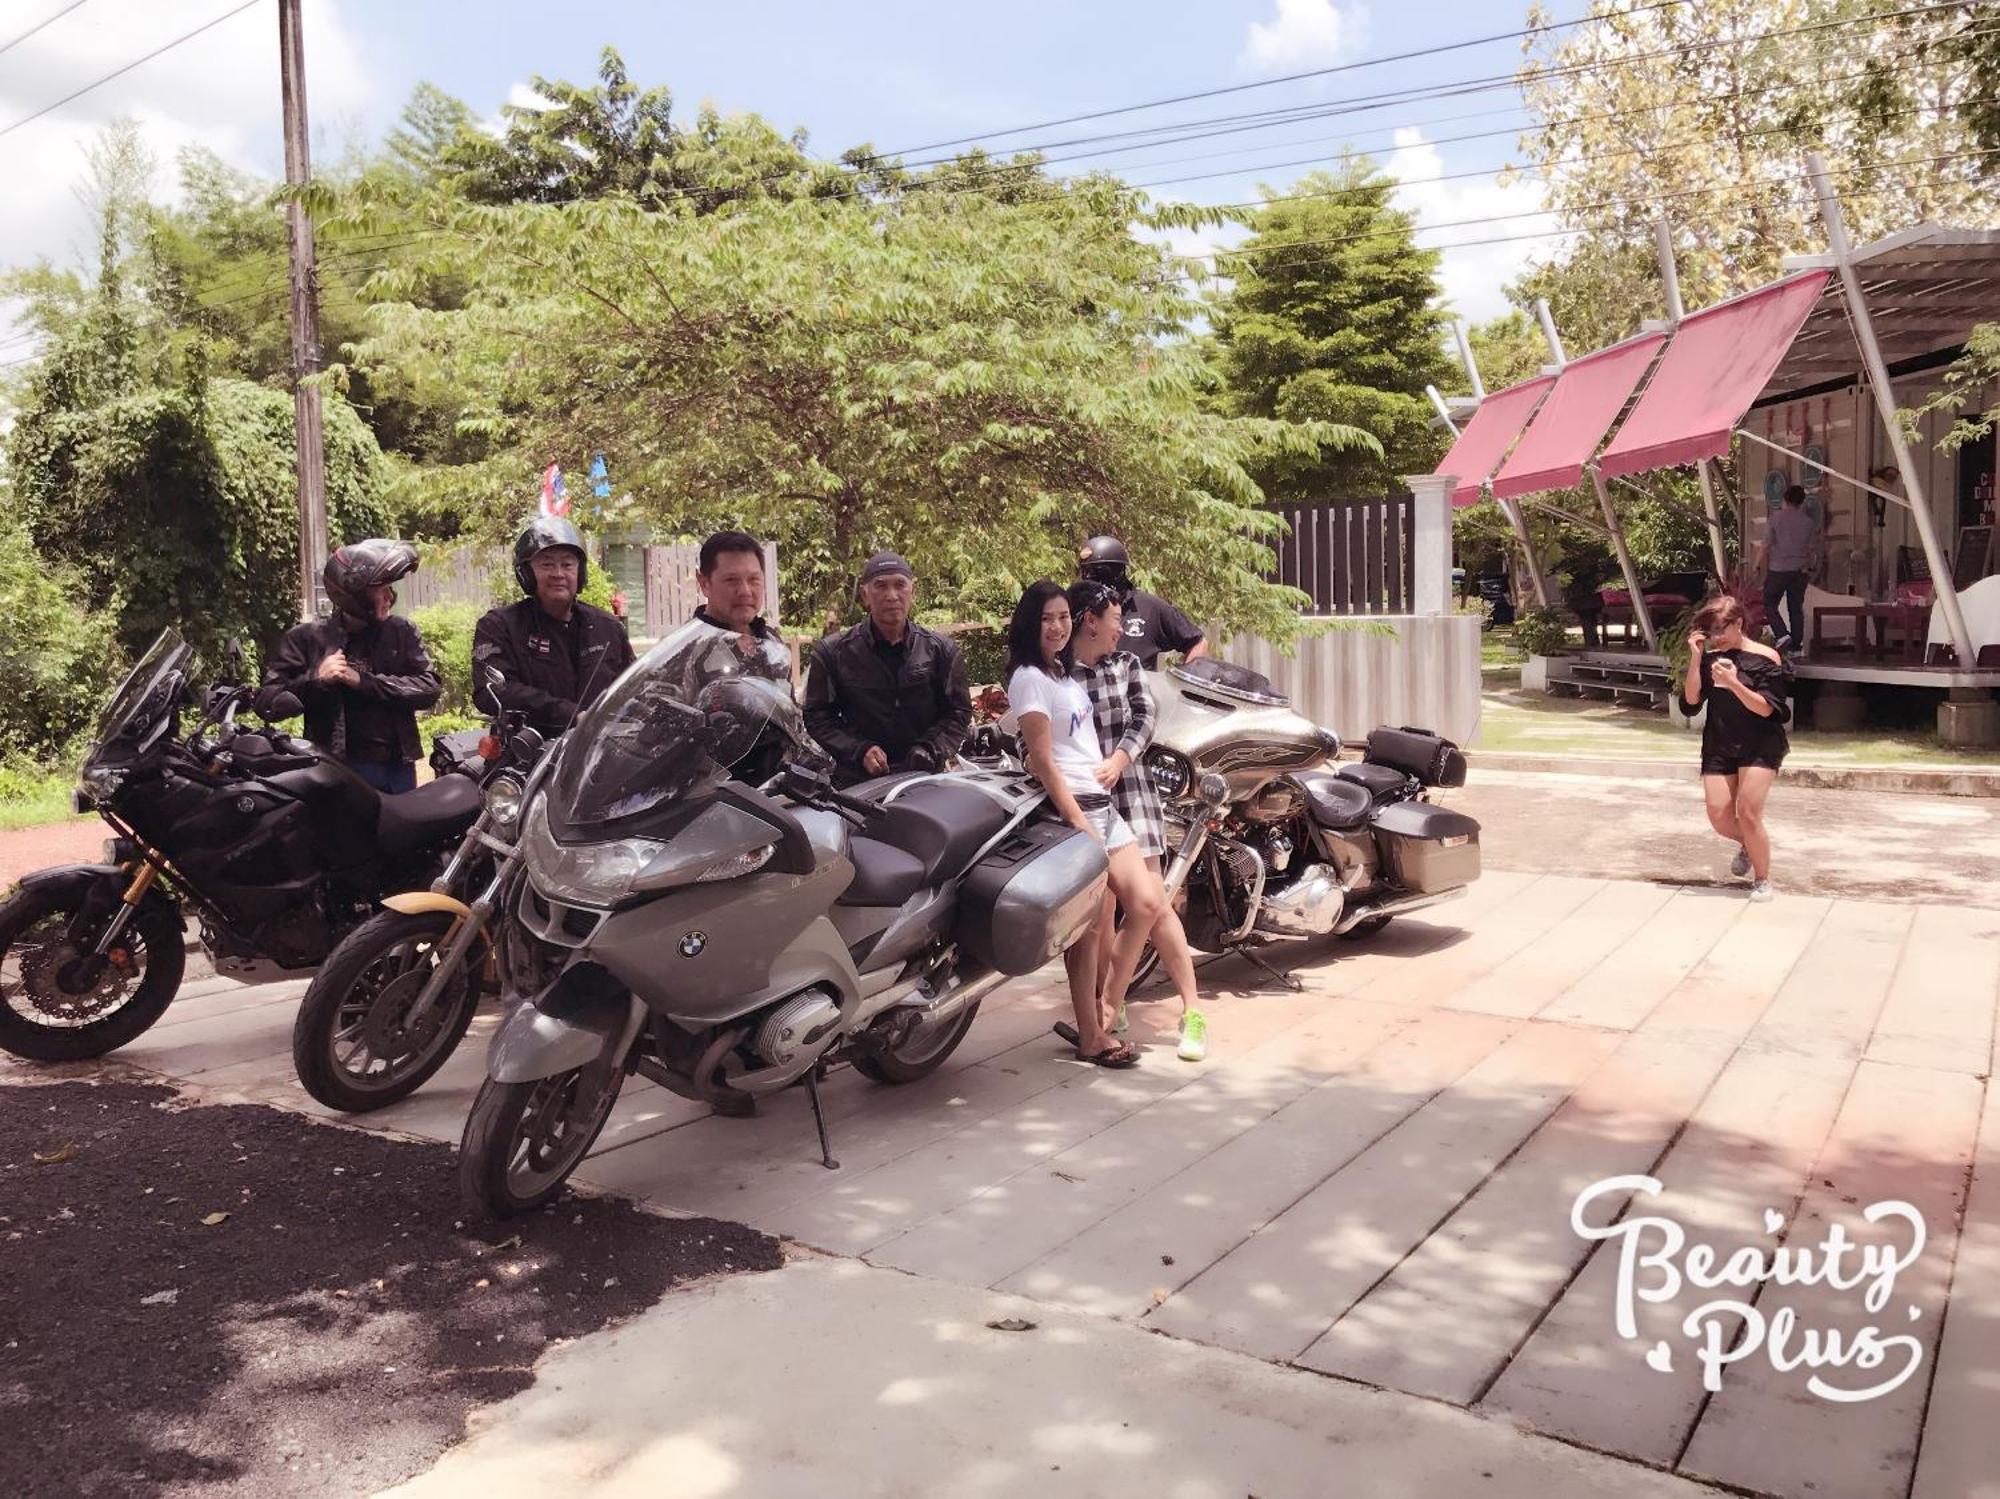 Nunou Cafe Hotel Prachinburi Exterior photo